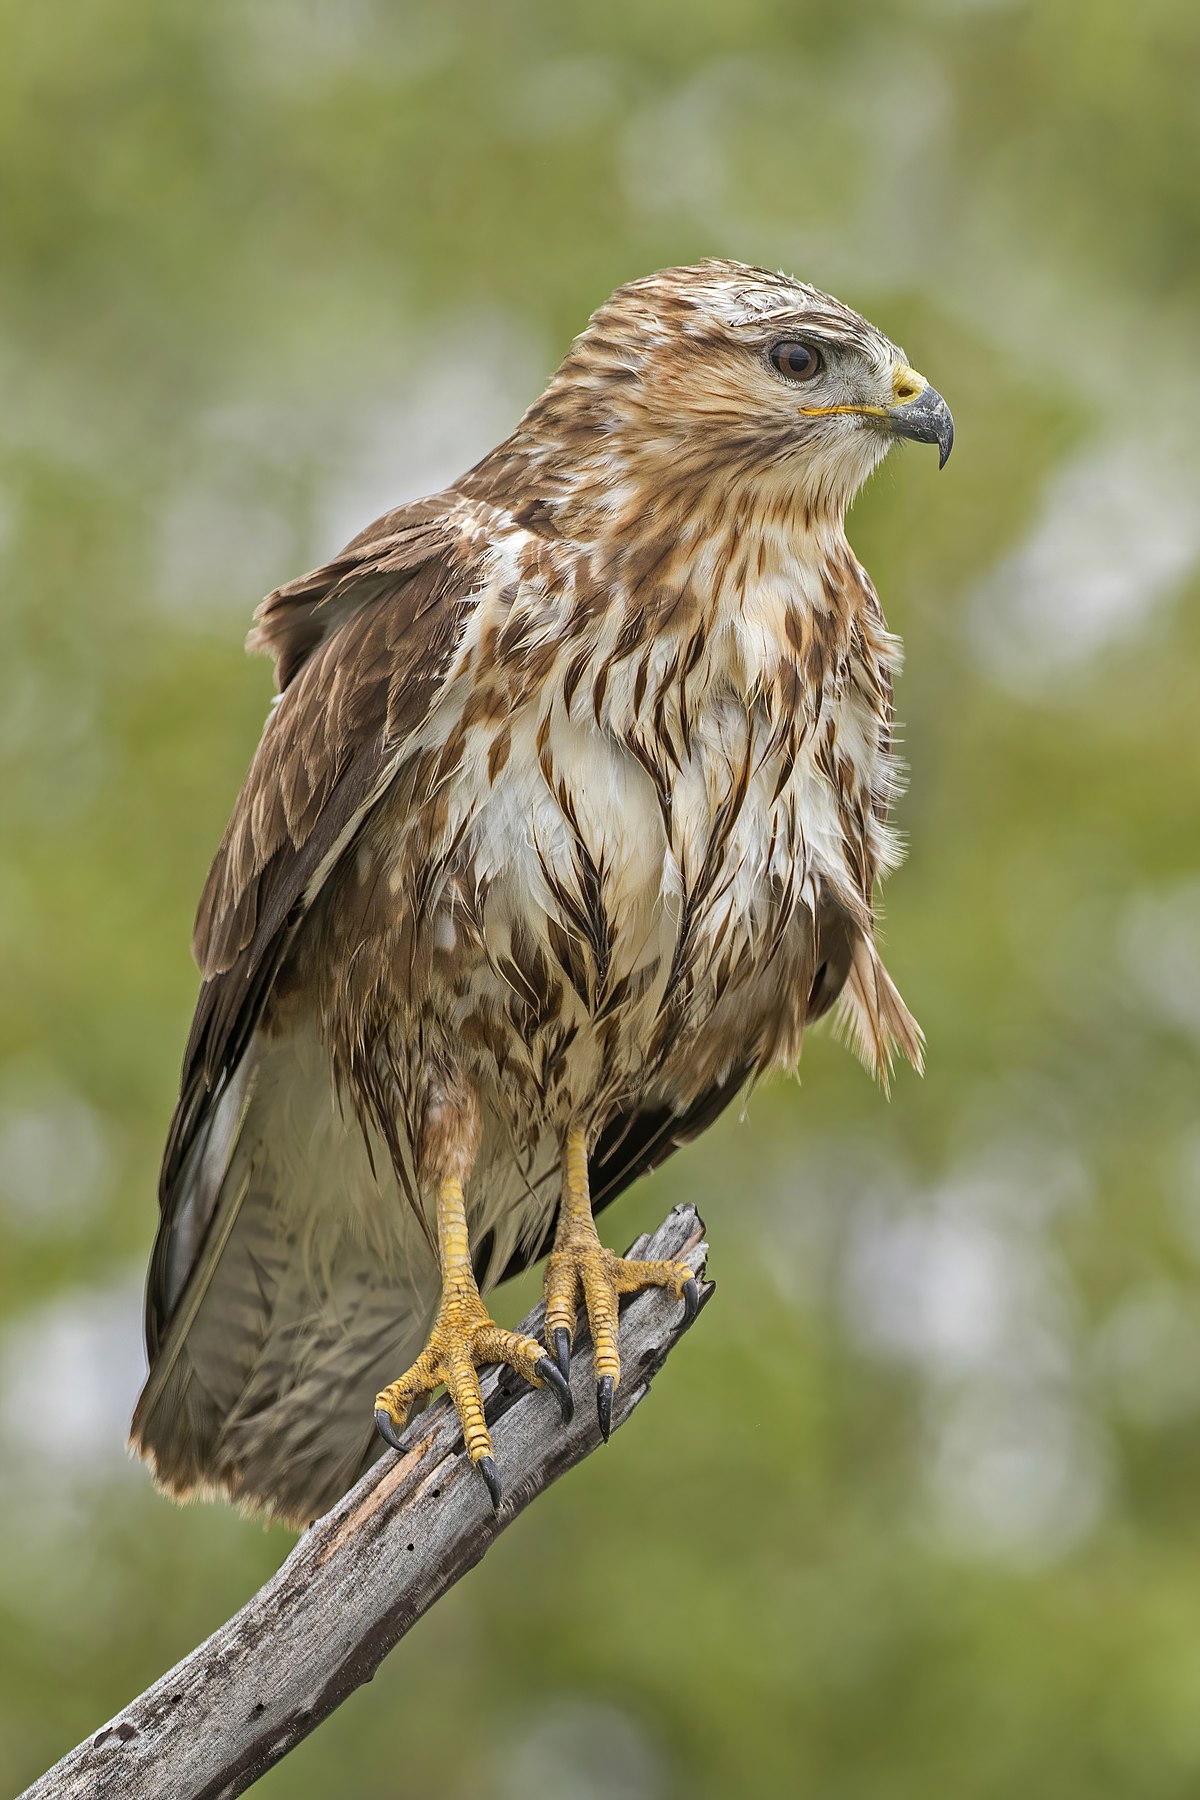 Common buzzard - Wikipedia